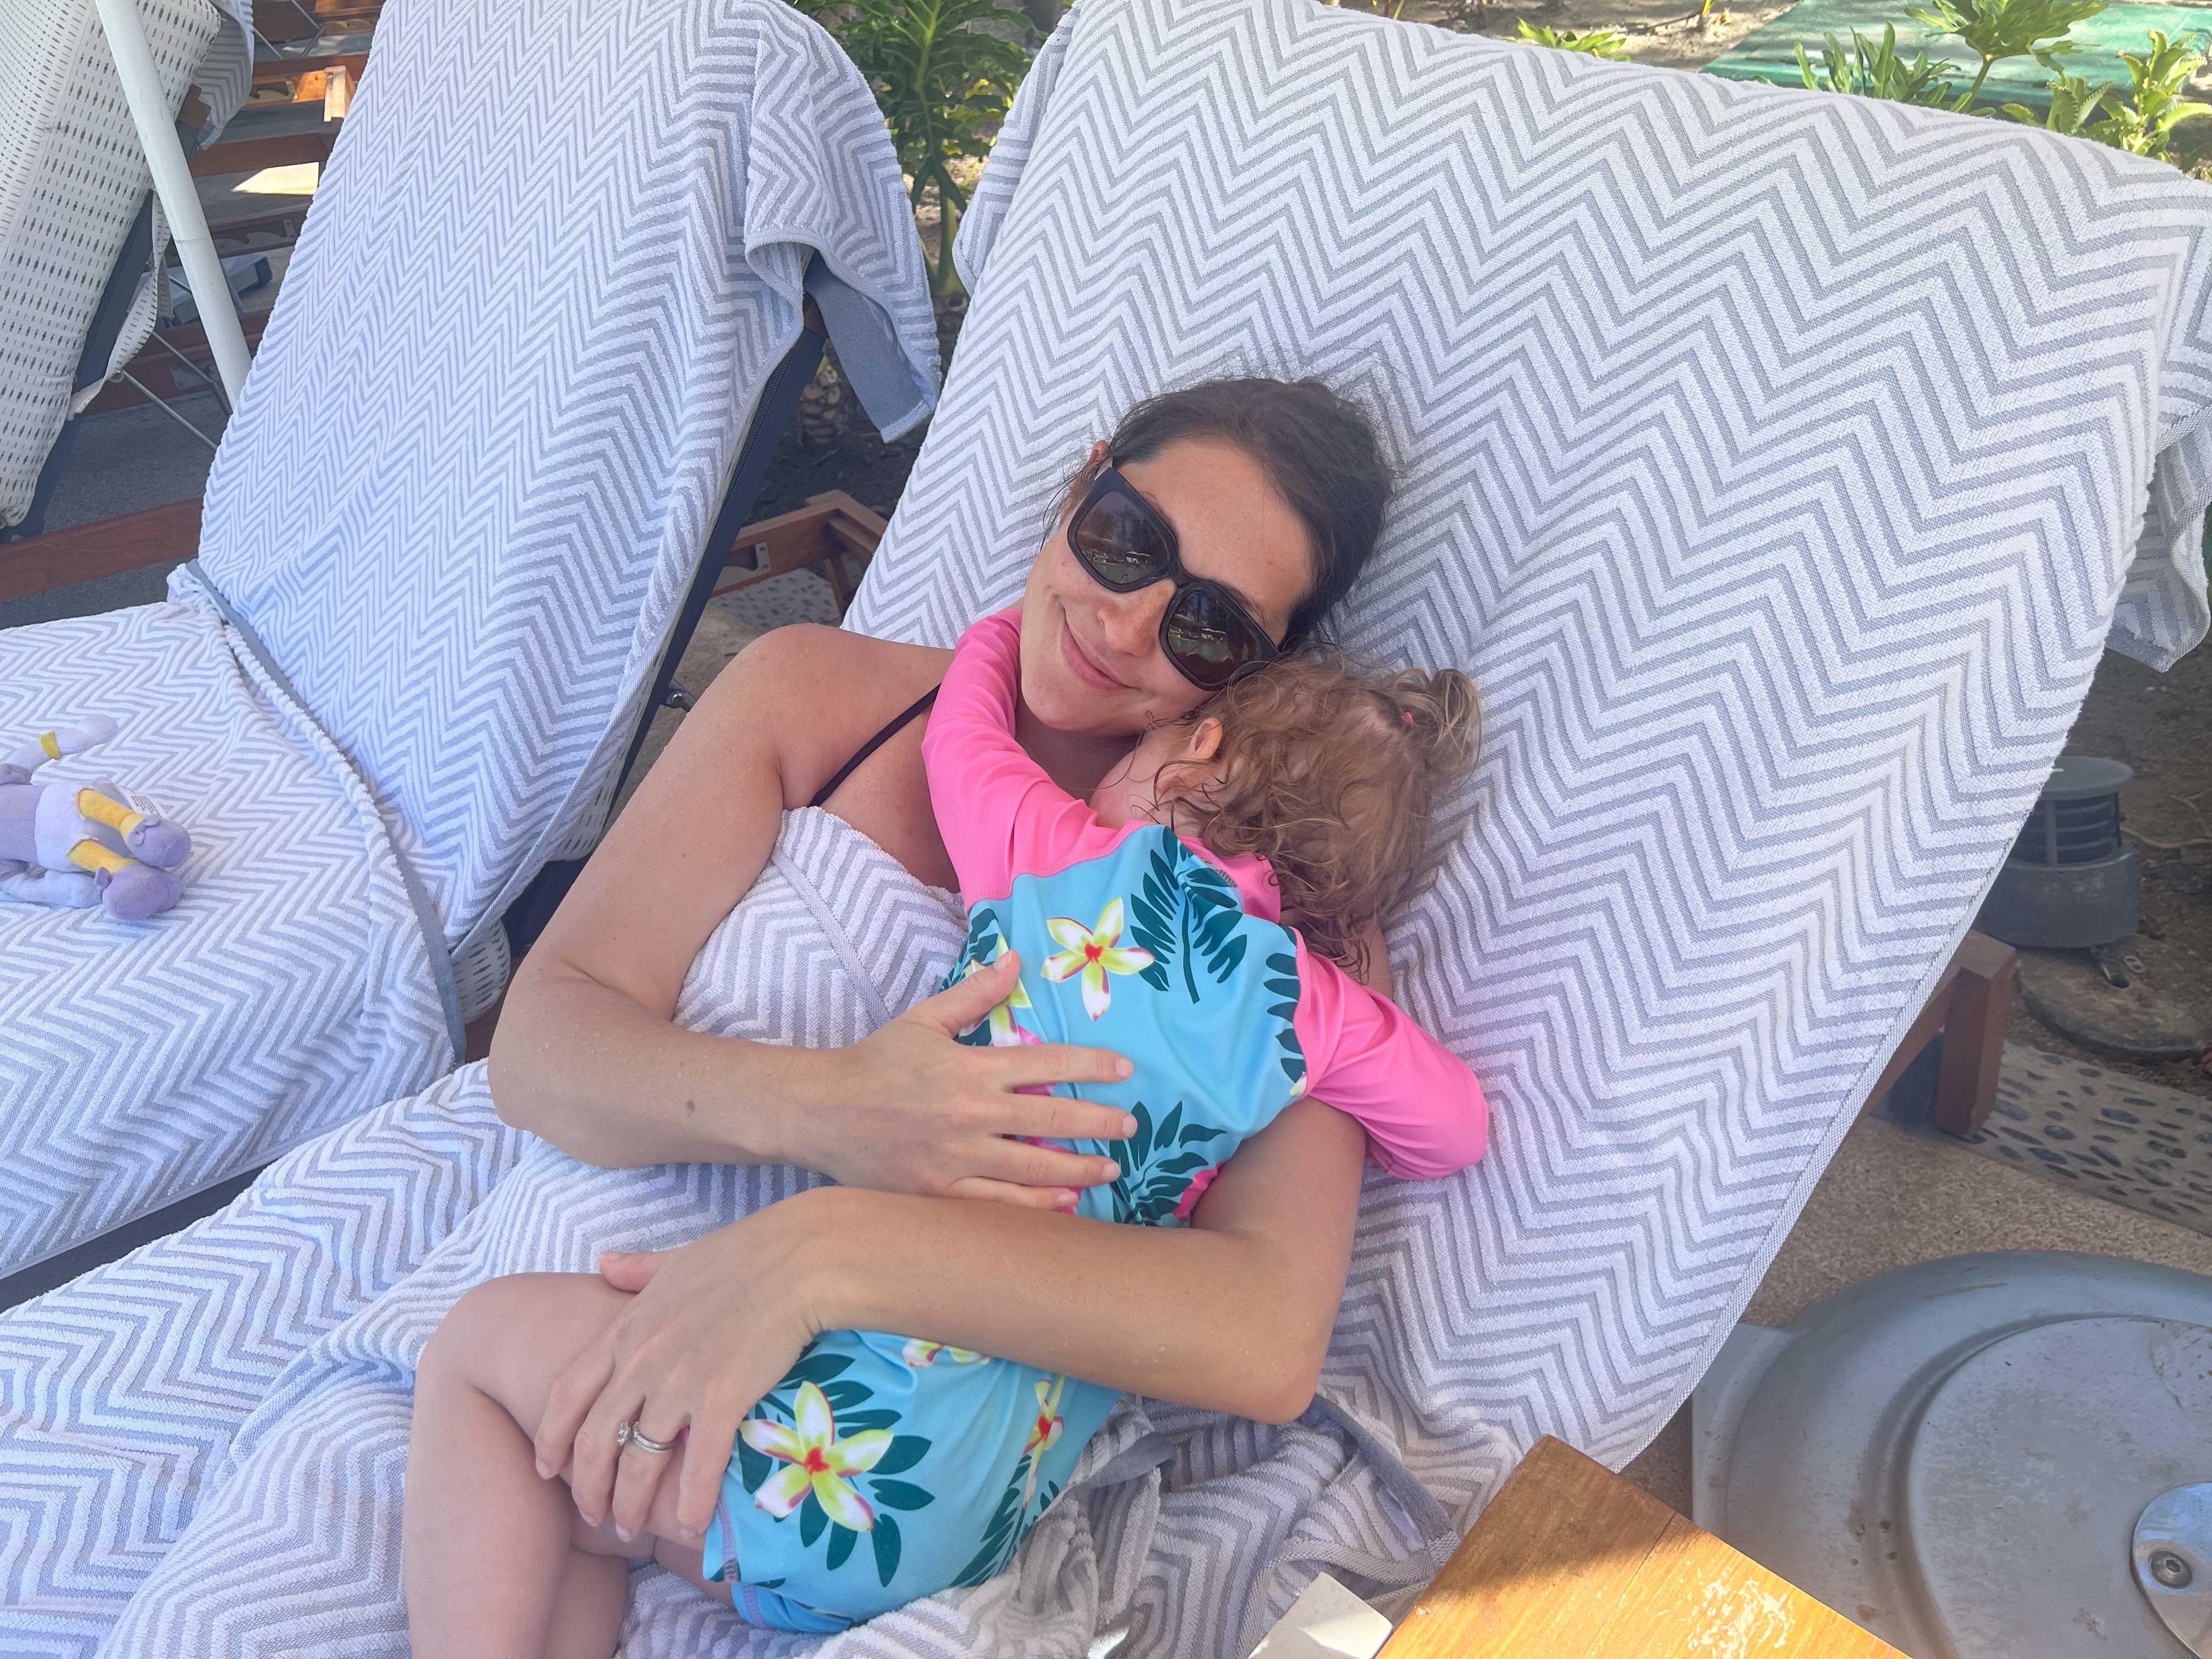 Eine Frau mit Sonnenbrille umarmt ihr Kind auf einem mit Handtüchern bedeckten Liegestuhl.